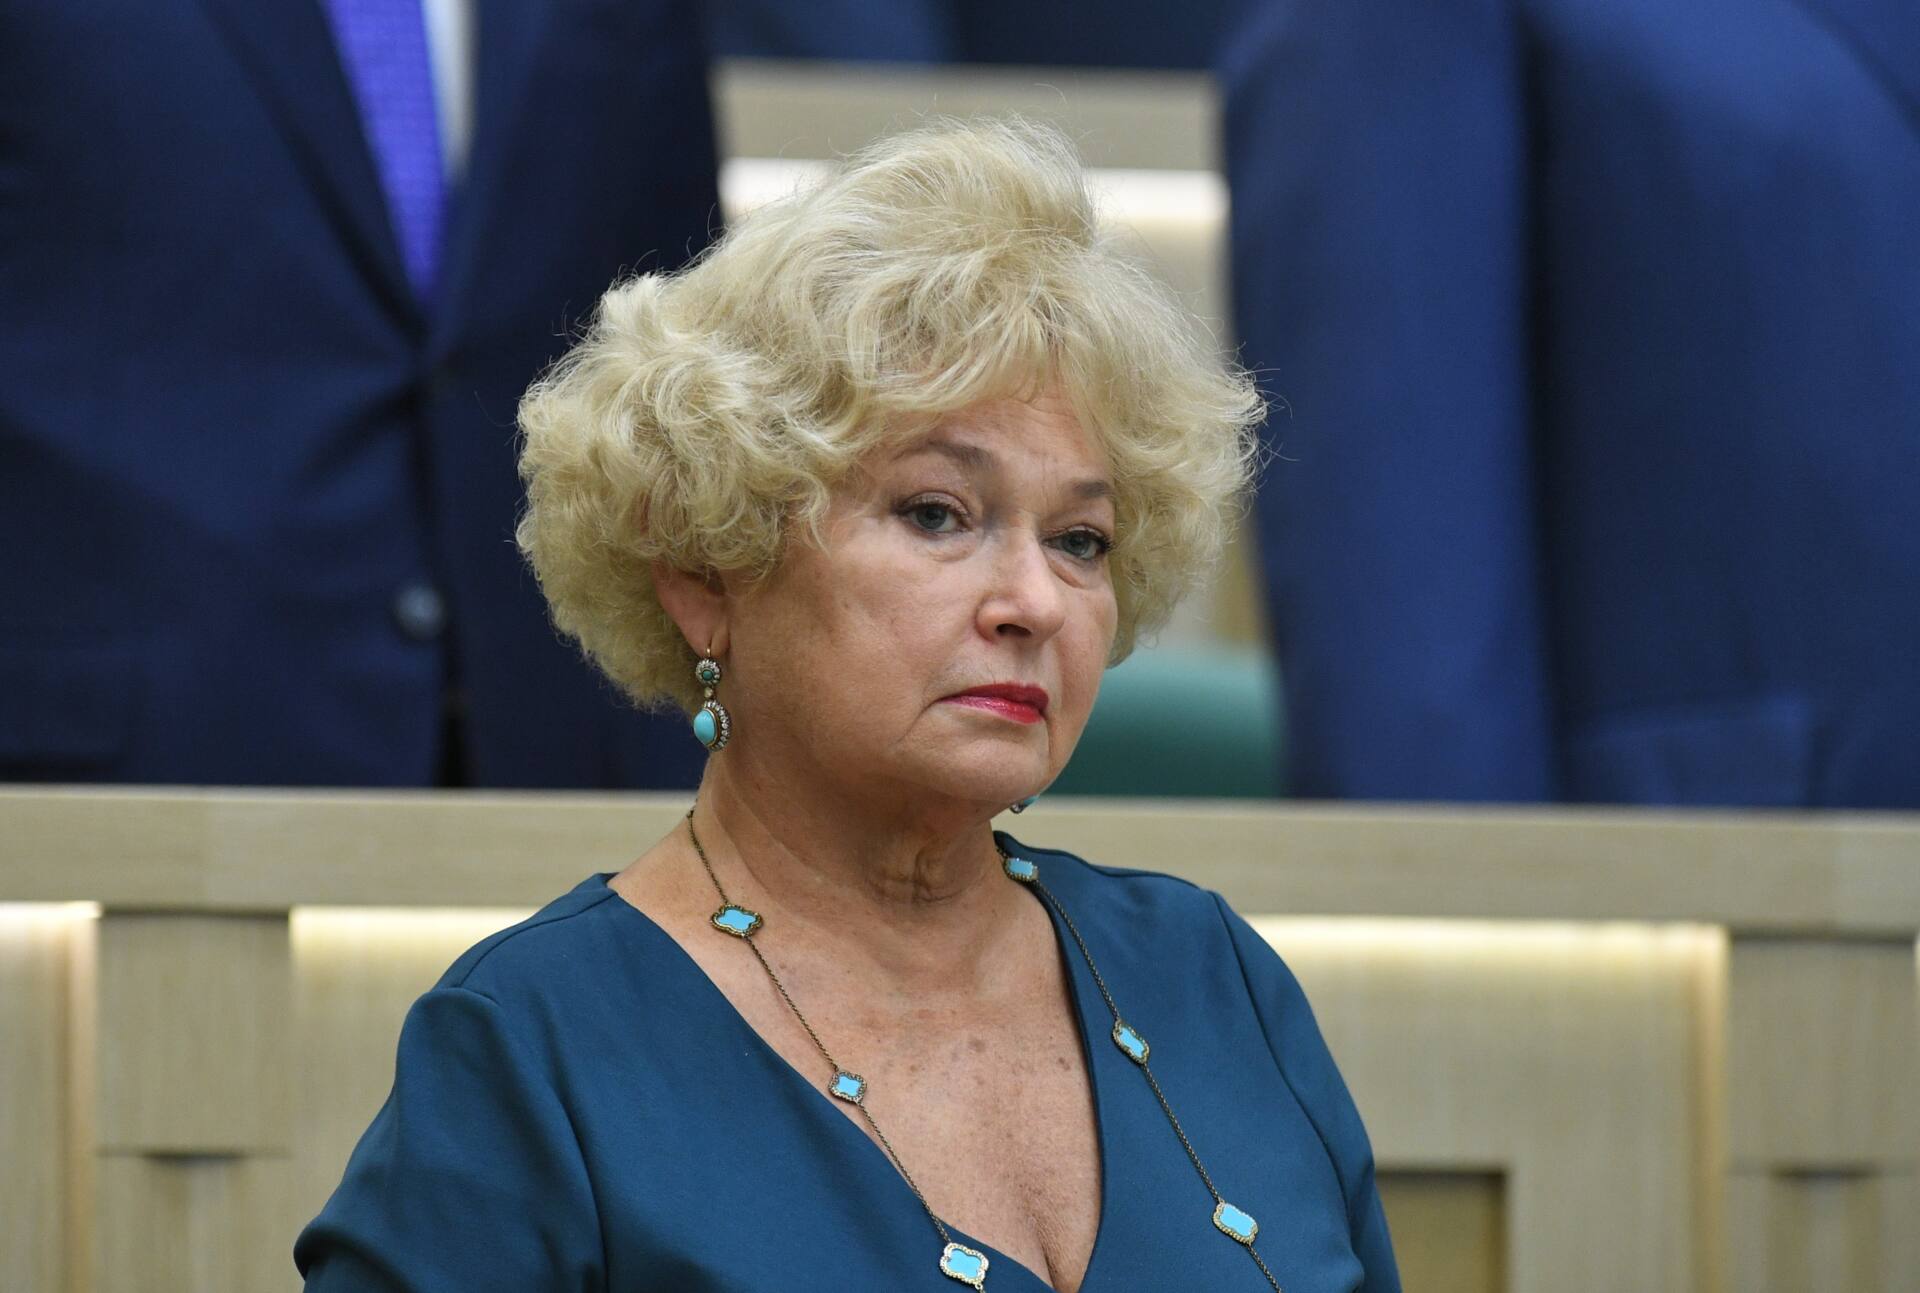 После грандиозного скандала в Кремле наконец взялись за мать Собчак, сенатора Нарусову. Говорят инициатором стал сам Путин